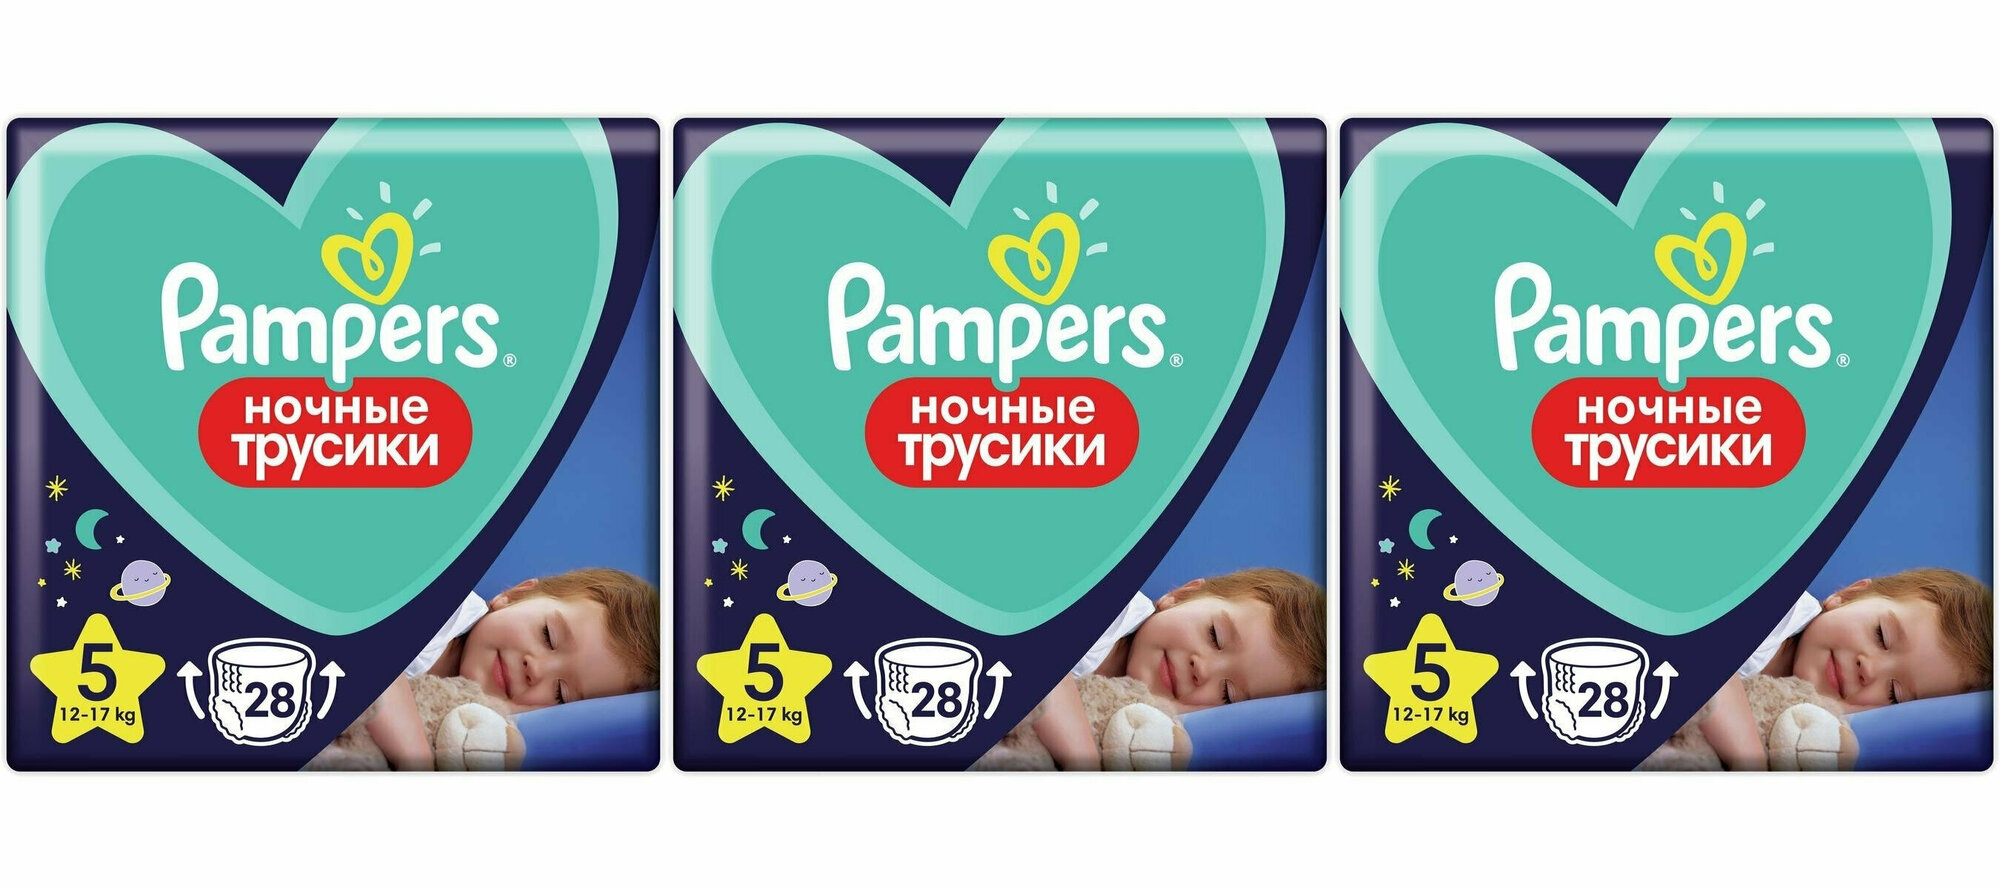 Pampers Ночные подгузники-трусики для мальчиков и девочек Junior (12-17кг) Эконом 3 упаковки 28 шт